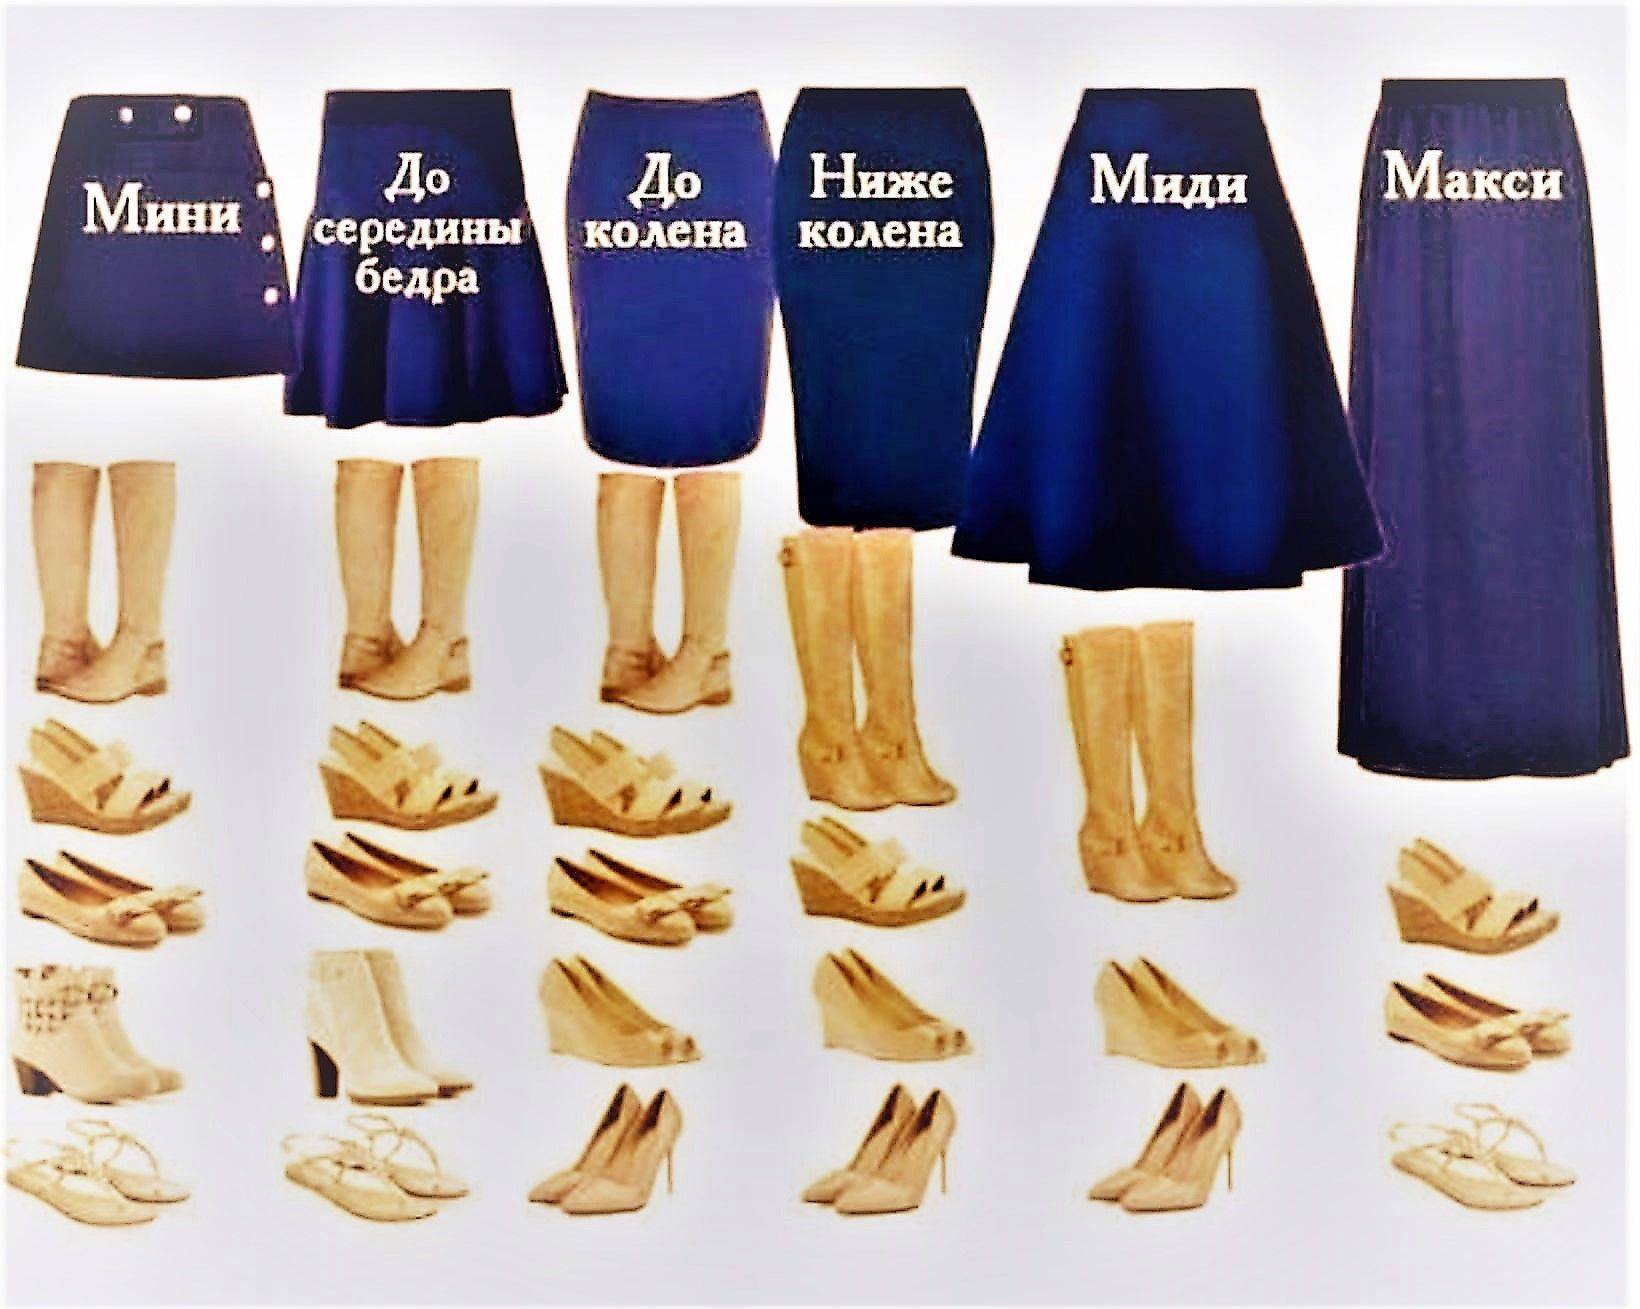 Как носить юбки длиной до колена: 11 шагов